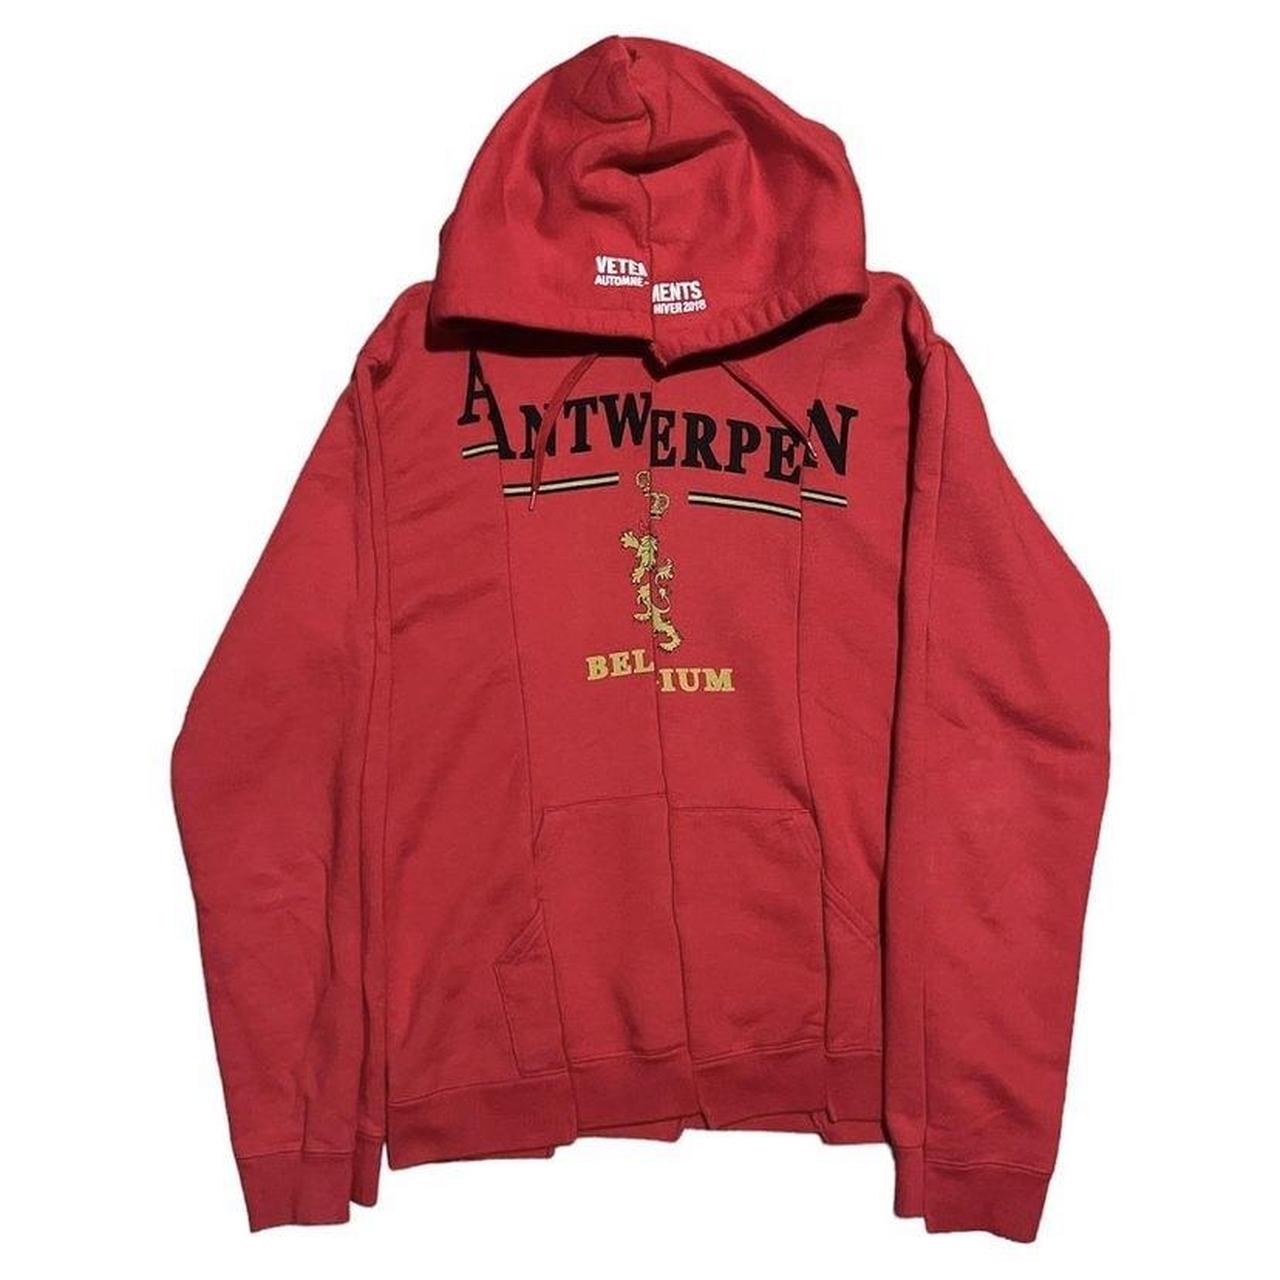 Vetements Antwerp Red Deconstructed Hoodie Sweatshirt Sz XS Womens $930 